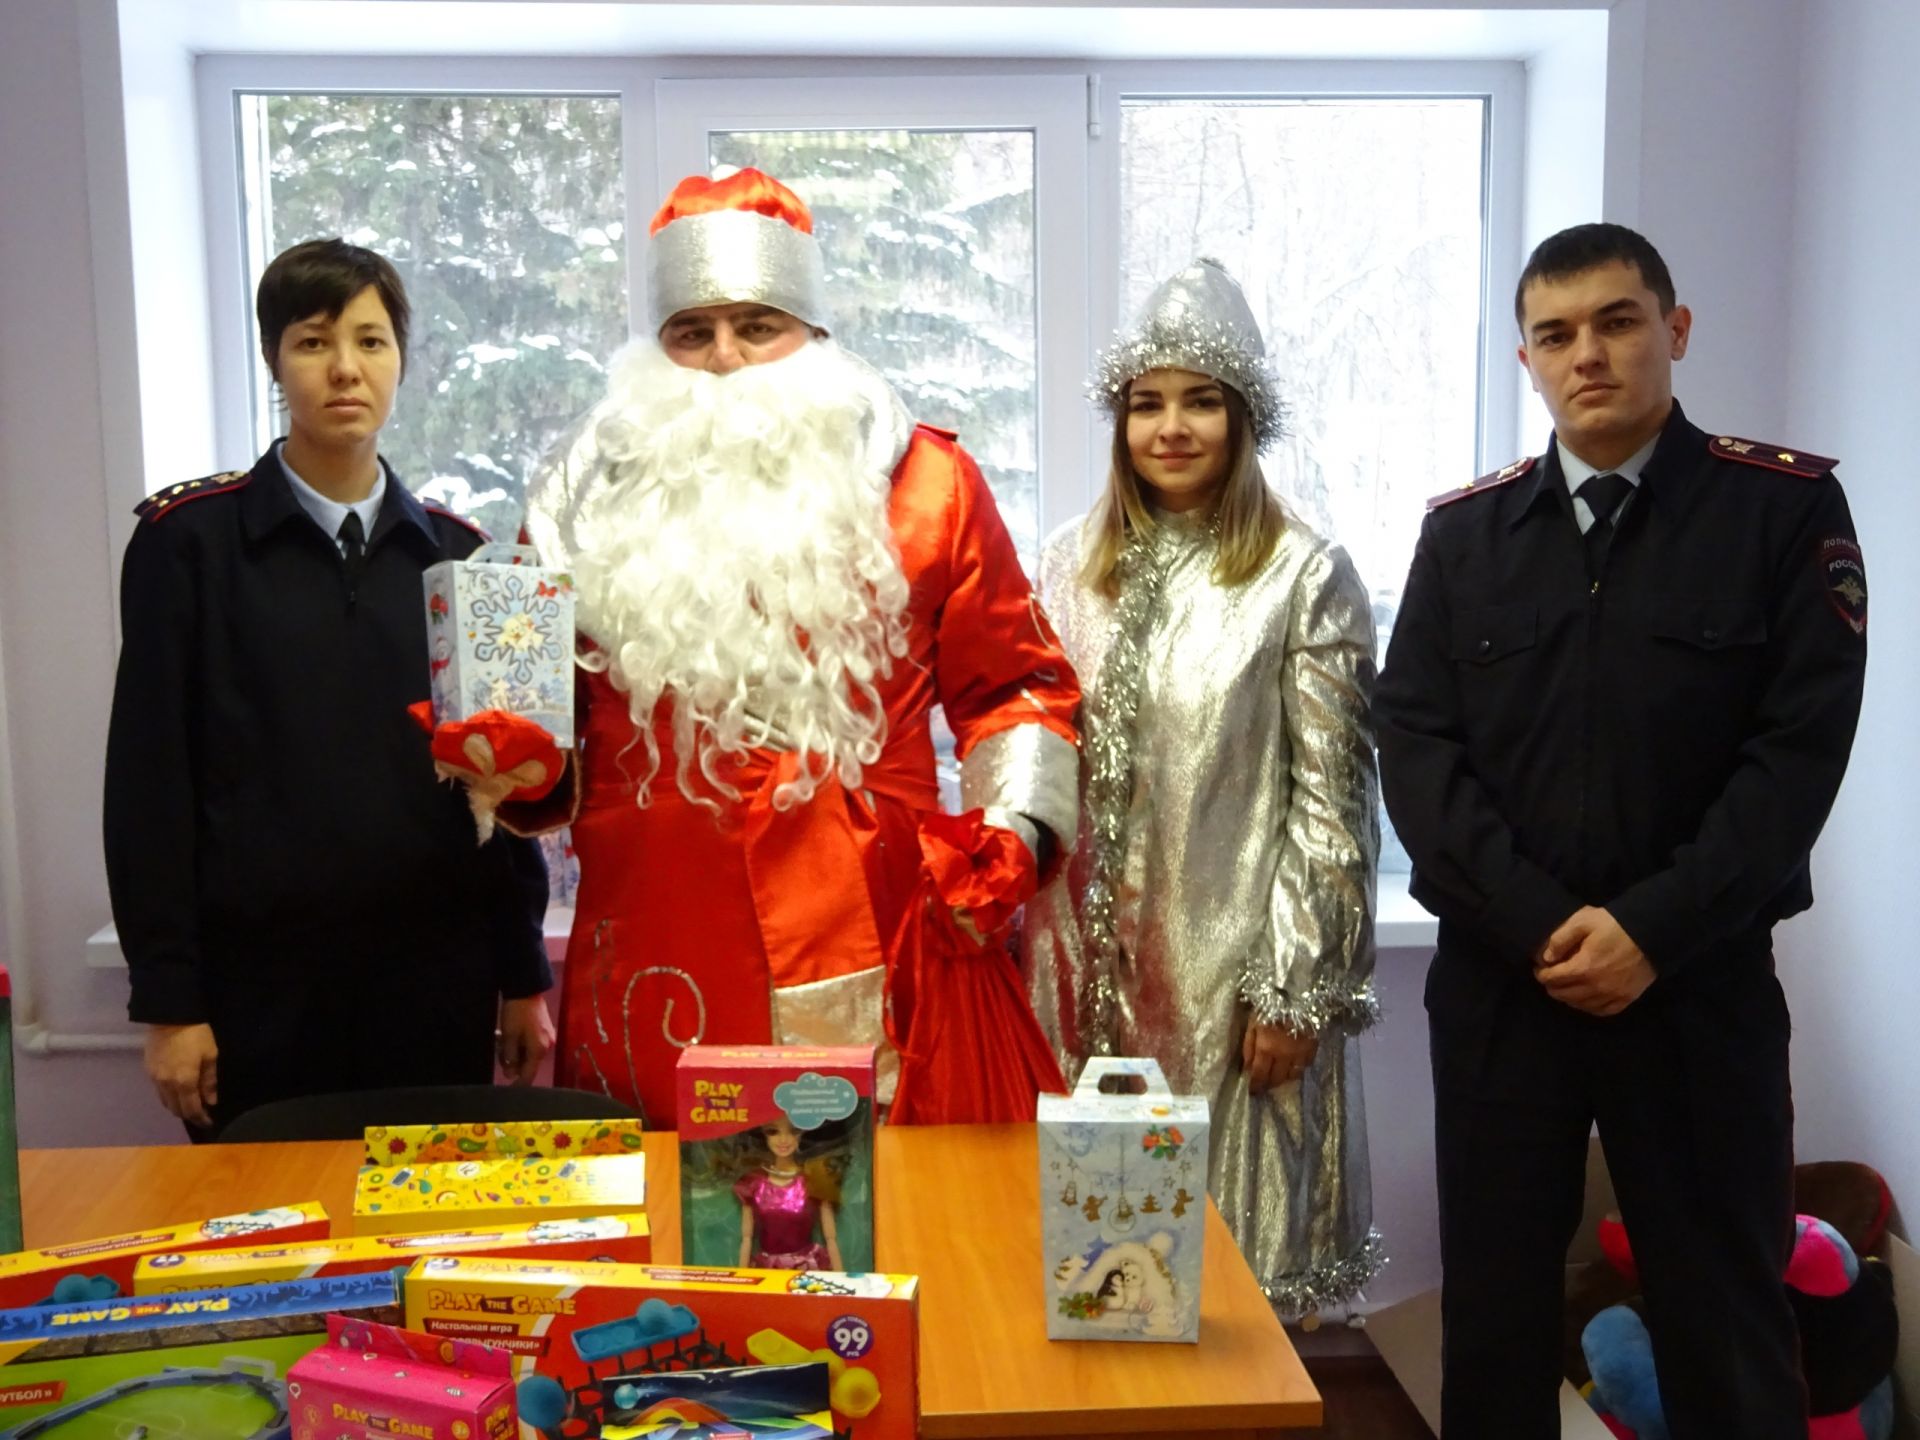 Полицейский Дед Мороз посетил детей из неблагополучных семей